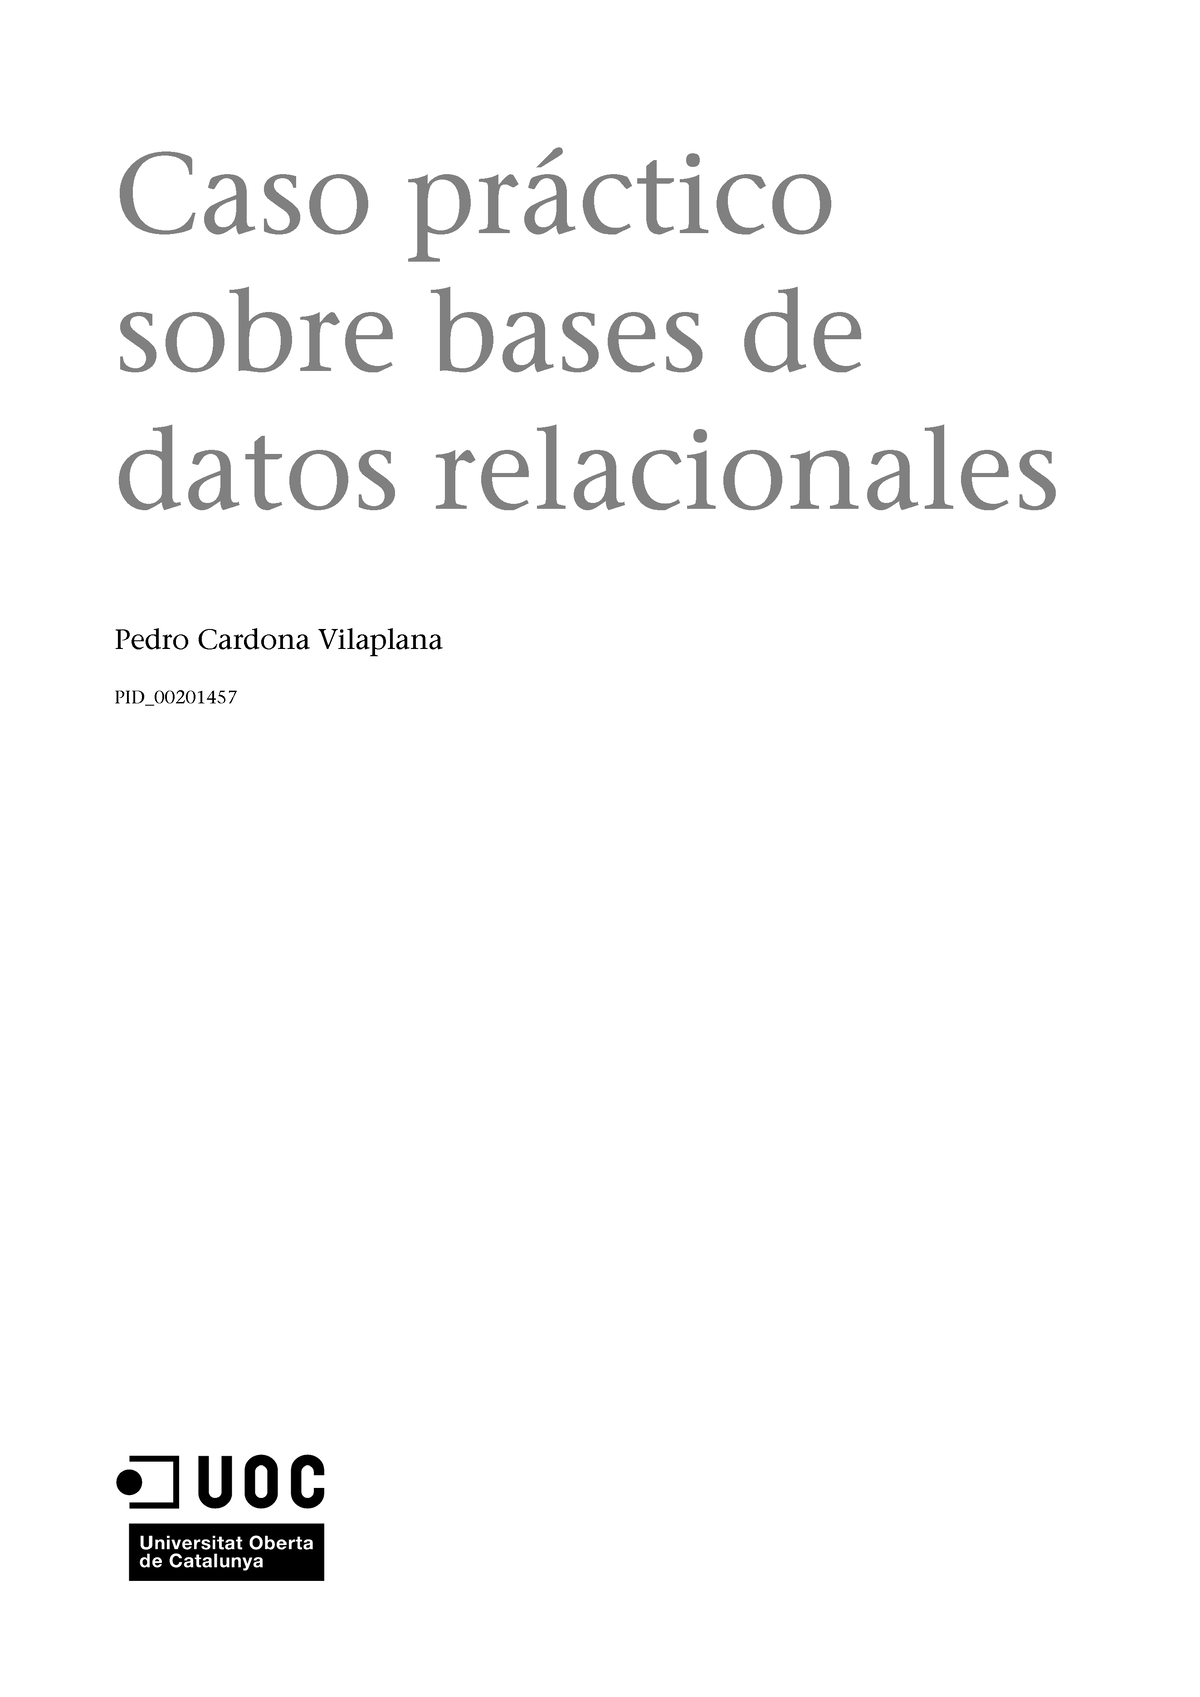 Bases De Datos 1 Caso Práctico Sobre Bases De Datos Relacionales Caso Práctico Sobre Bases De 5897